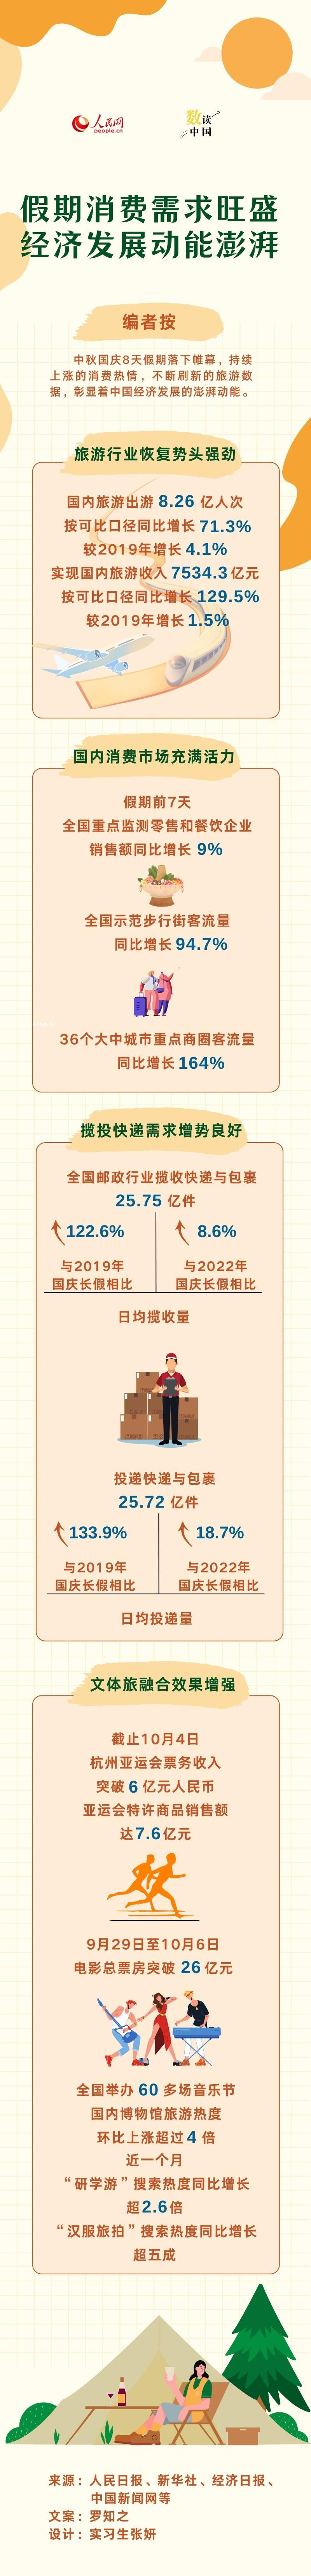 【天天聚看點】數讀中國 | 假期消費需求旺盛 經濟發展動能澎湃